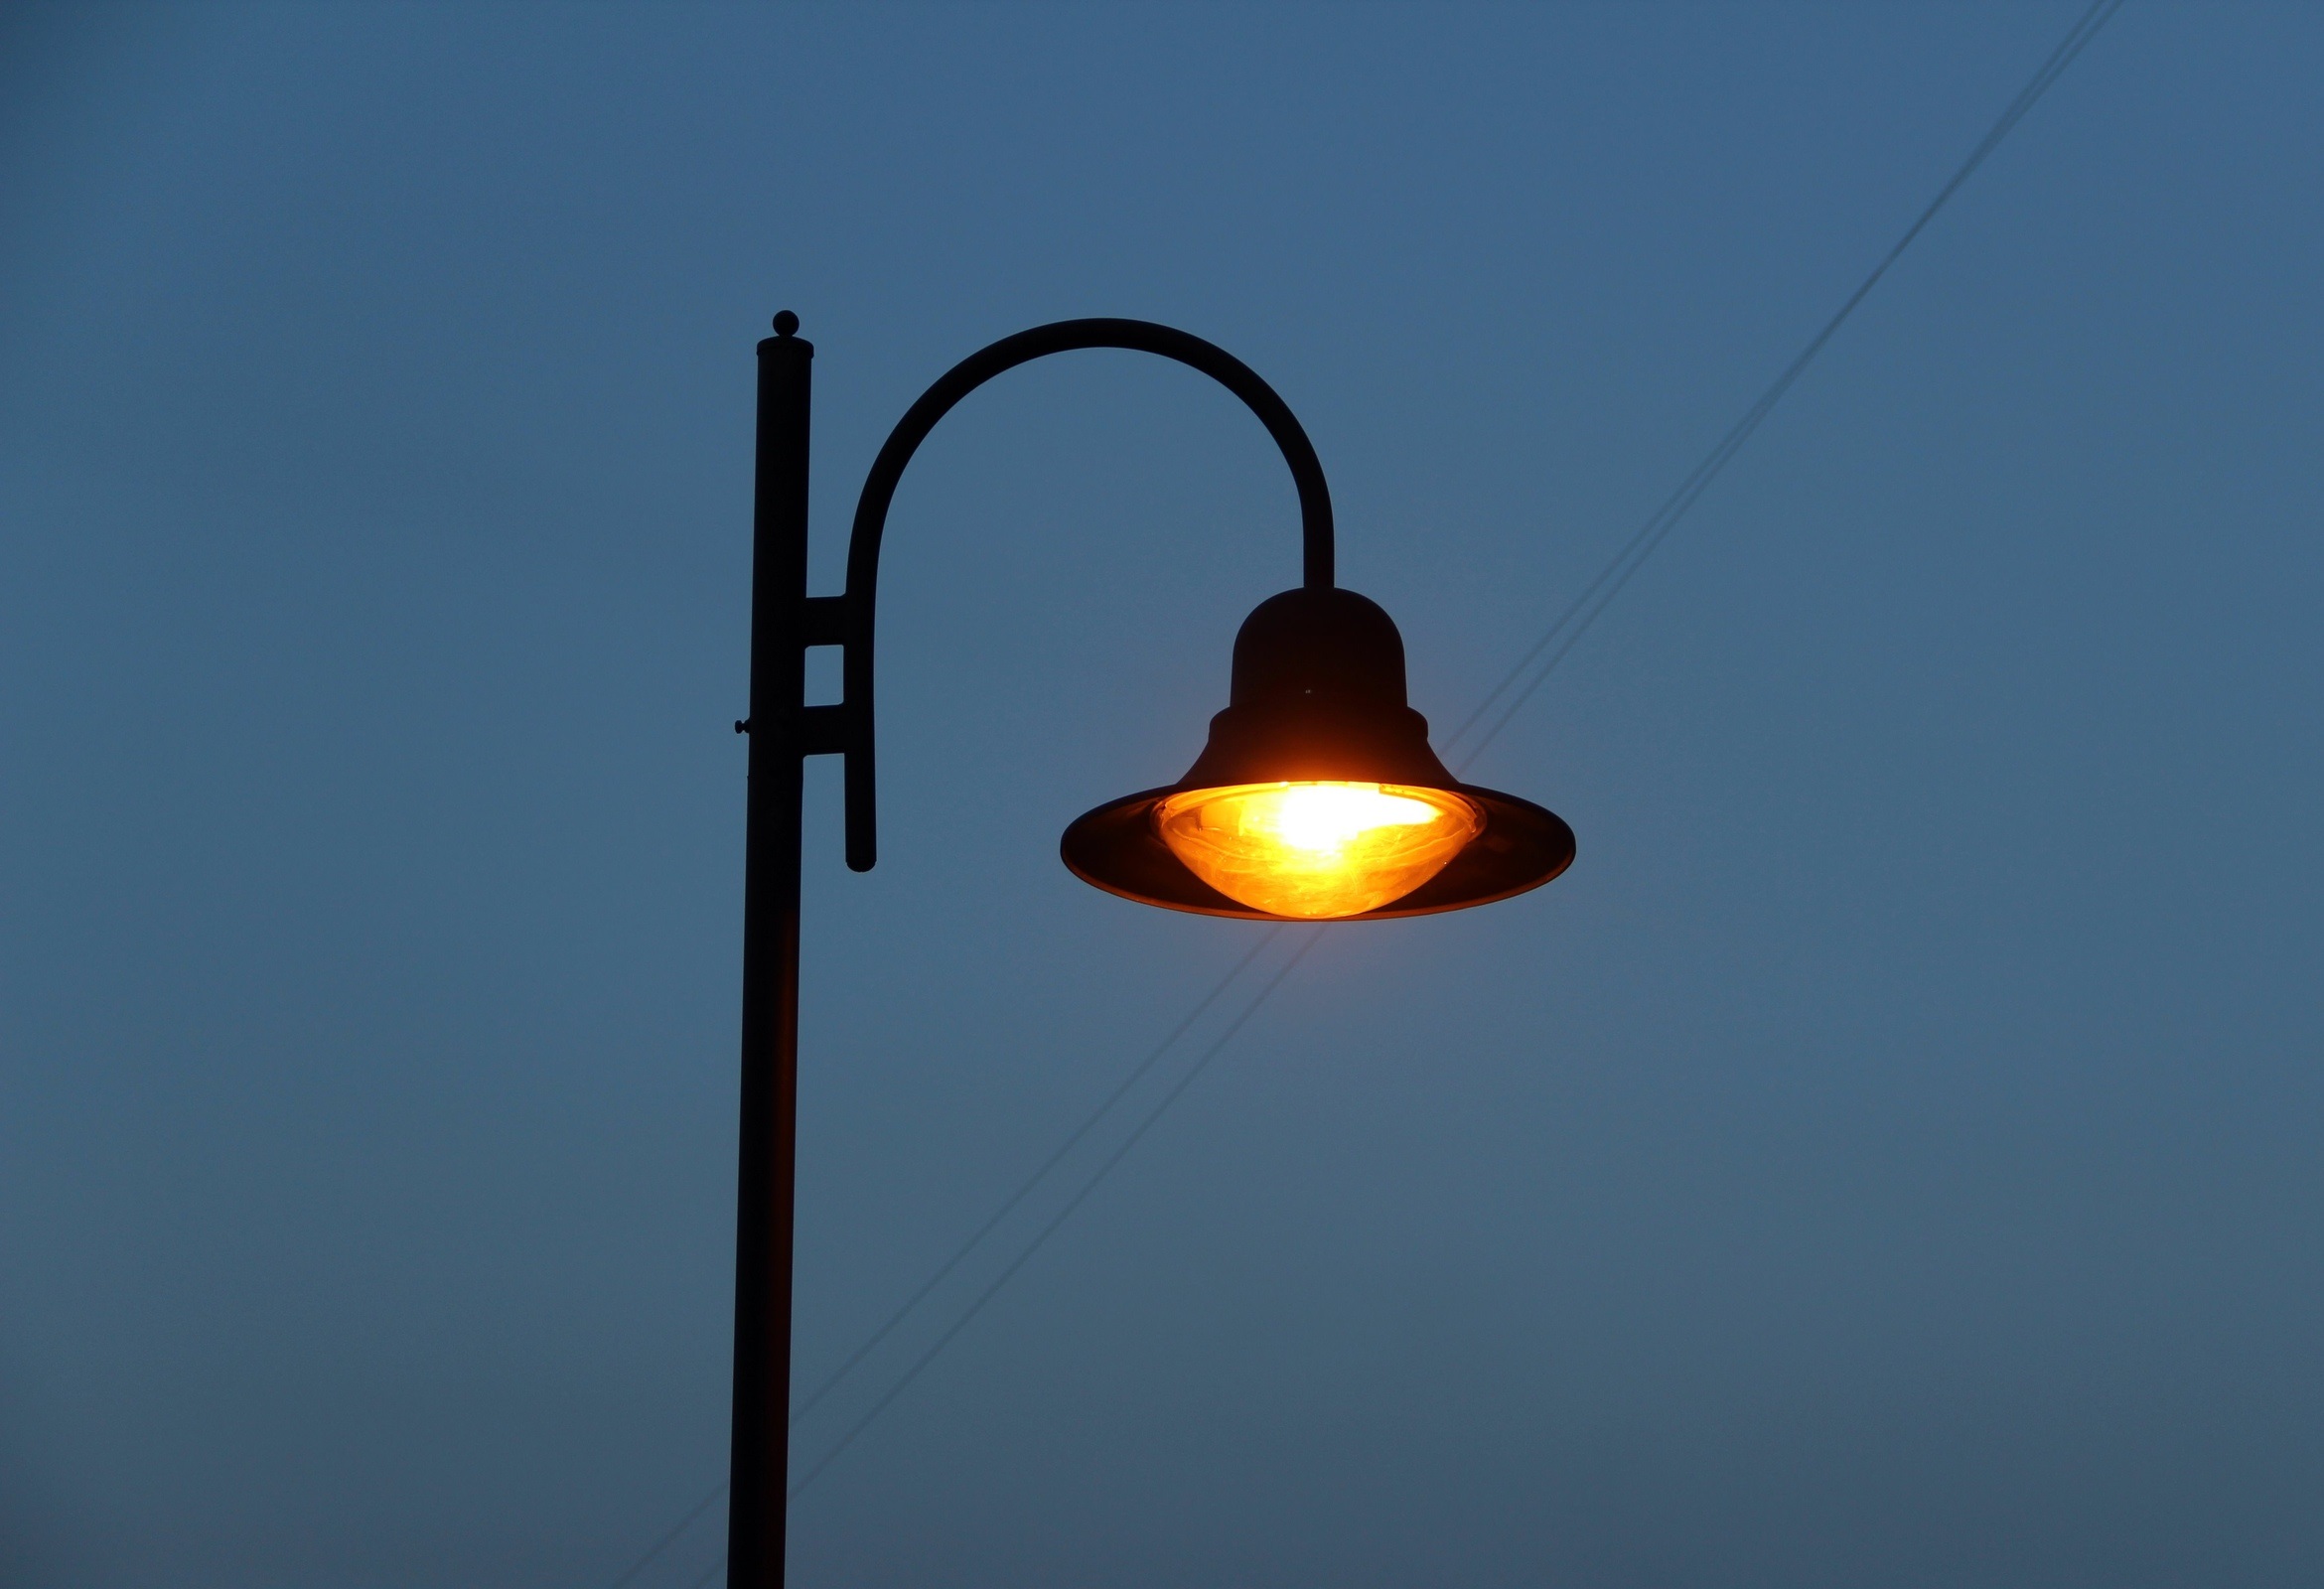 Уличное освещение появится на трех территориях в микрорайоне Синюшина Гора